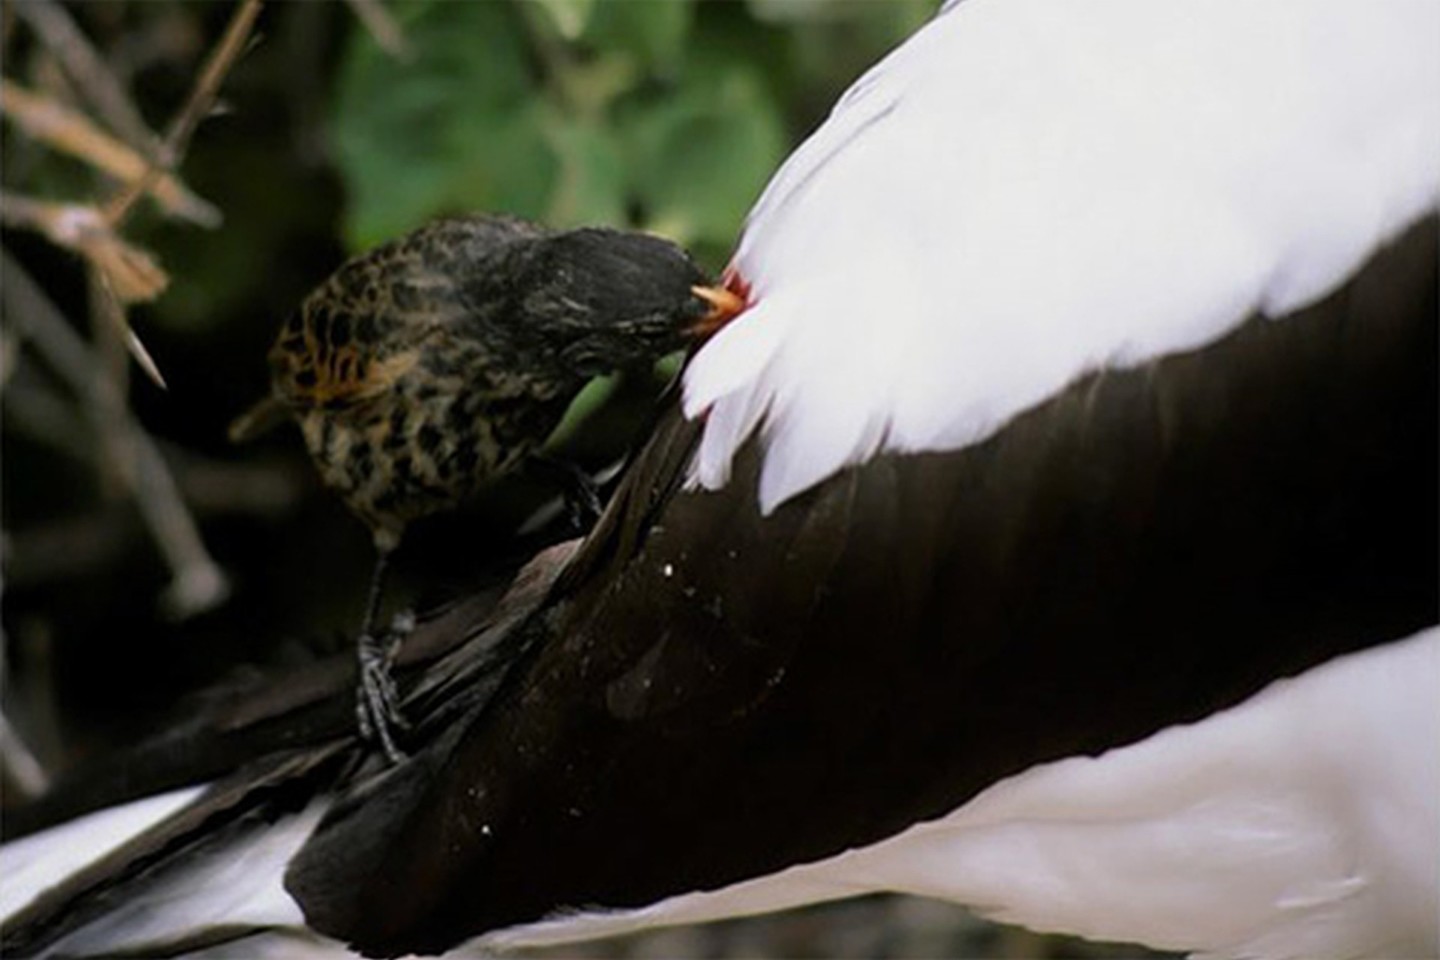  Vampyriniai kikiliai puikiai prisitaikė prie nepalankių vietos sąlygų, todėl dabar saloje galima rasti jau keliolika skirtingų šių paukščių rūšių.<br> Galapagosislands.com nuotr.